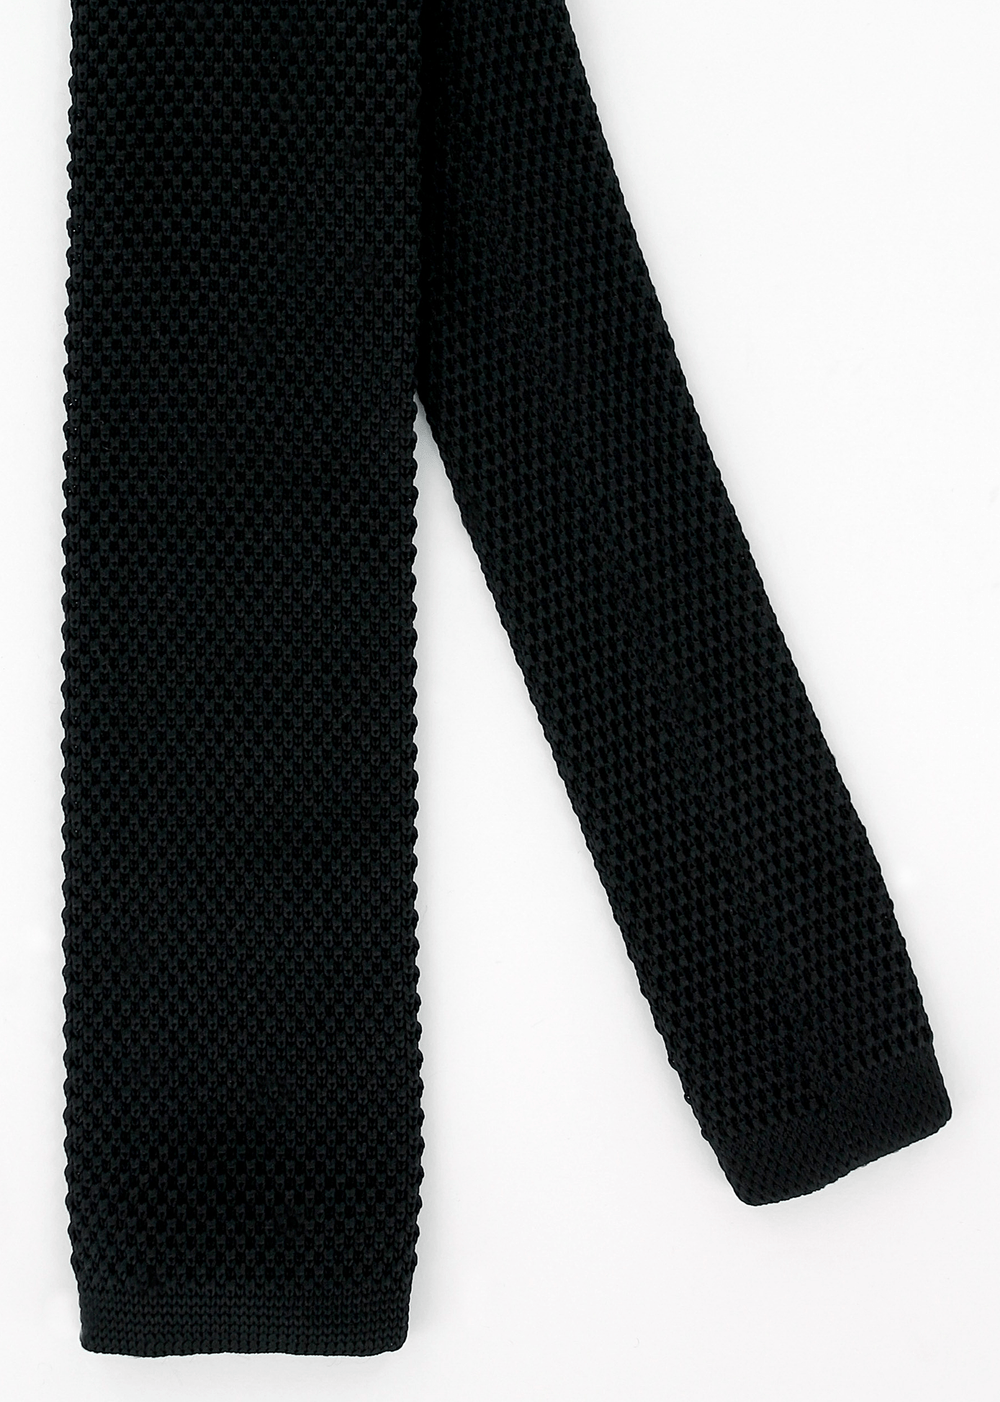 Cravate en maille noire | Cotton Park